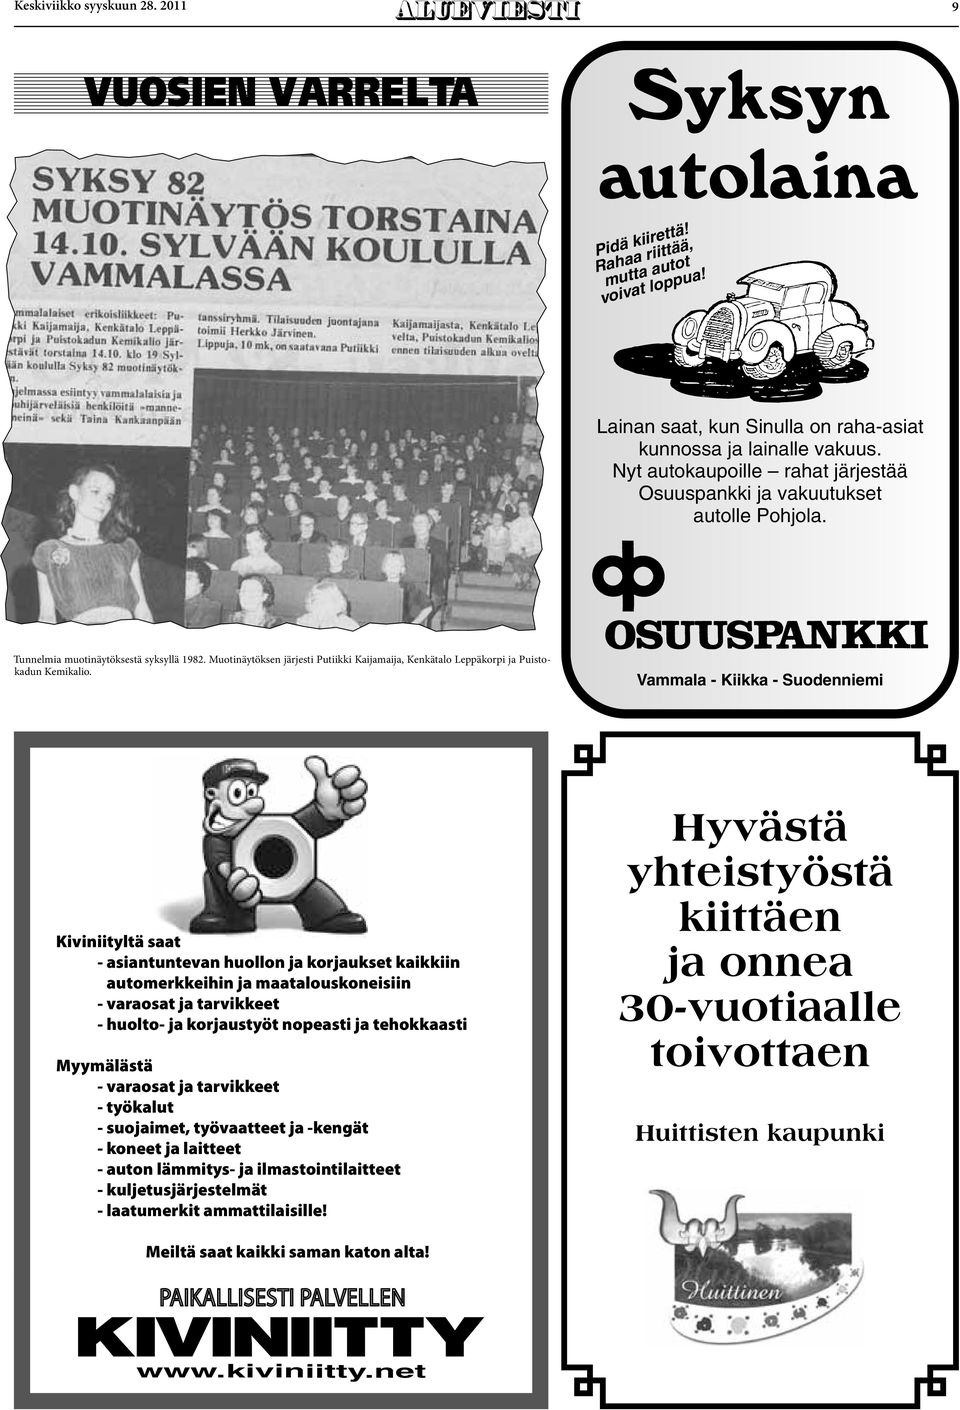 Muotinäytöksen järjesti Putiikki Kaijamaija, Kenkätalo Leppäkorpi ja Puistokadun Kemikalio.